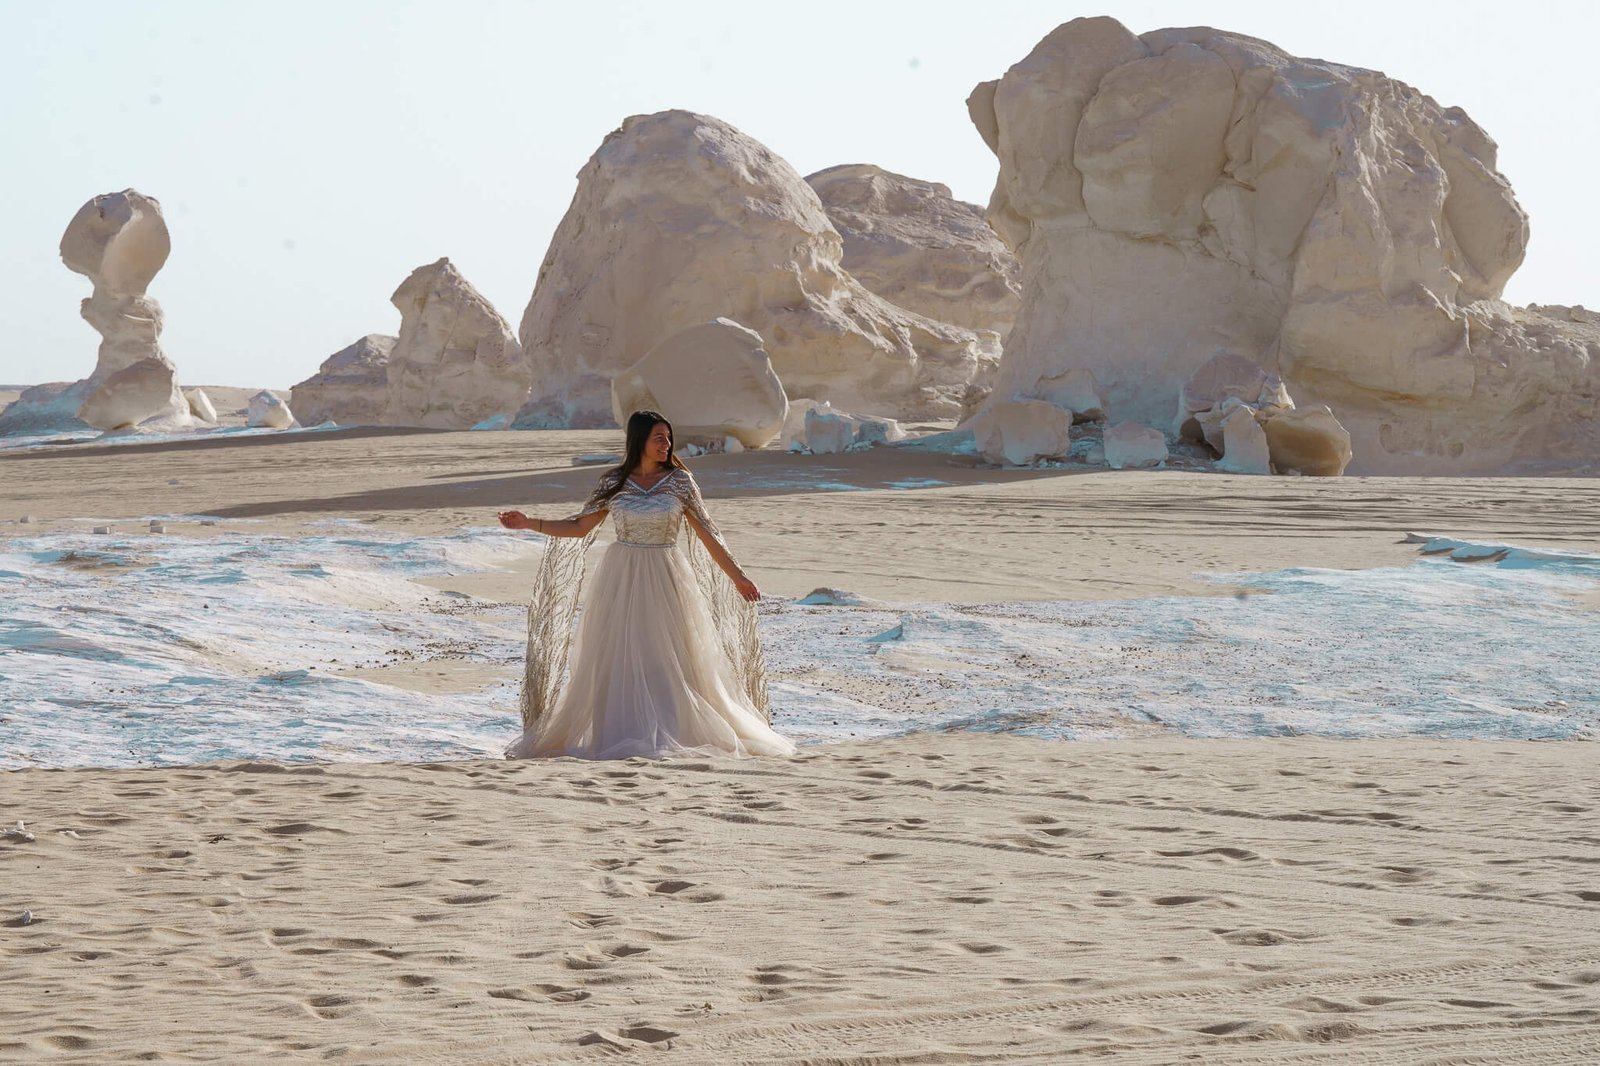 Danni in the White Desert, Egypt